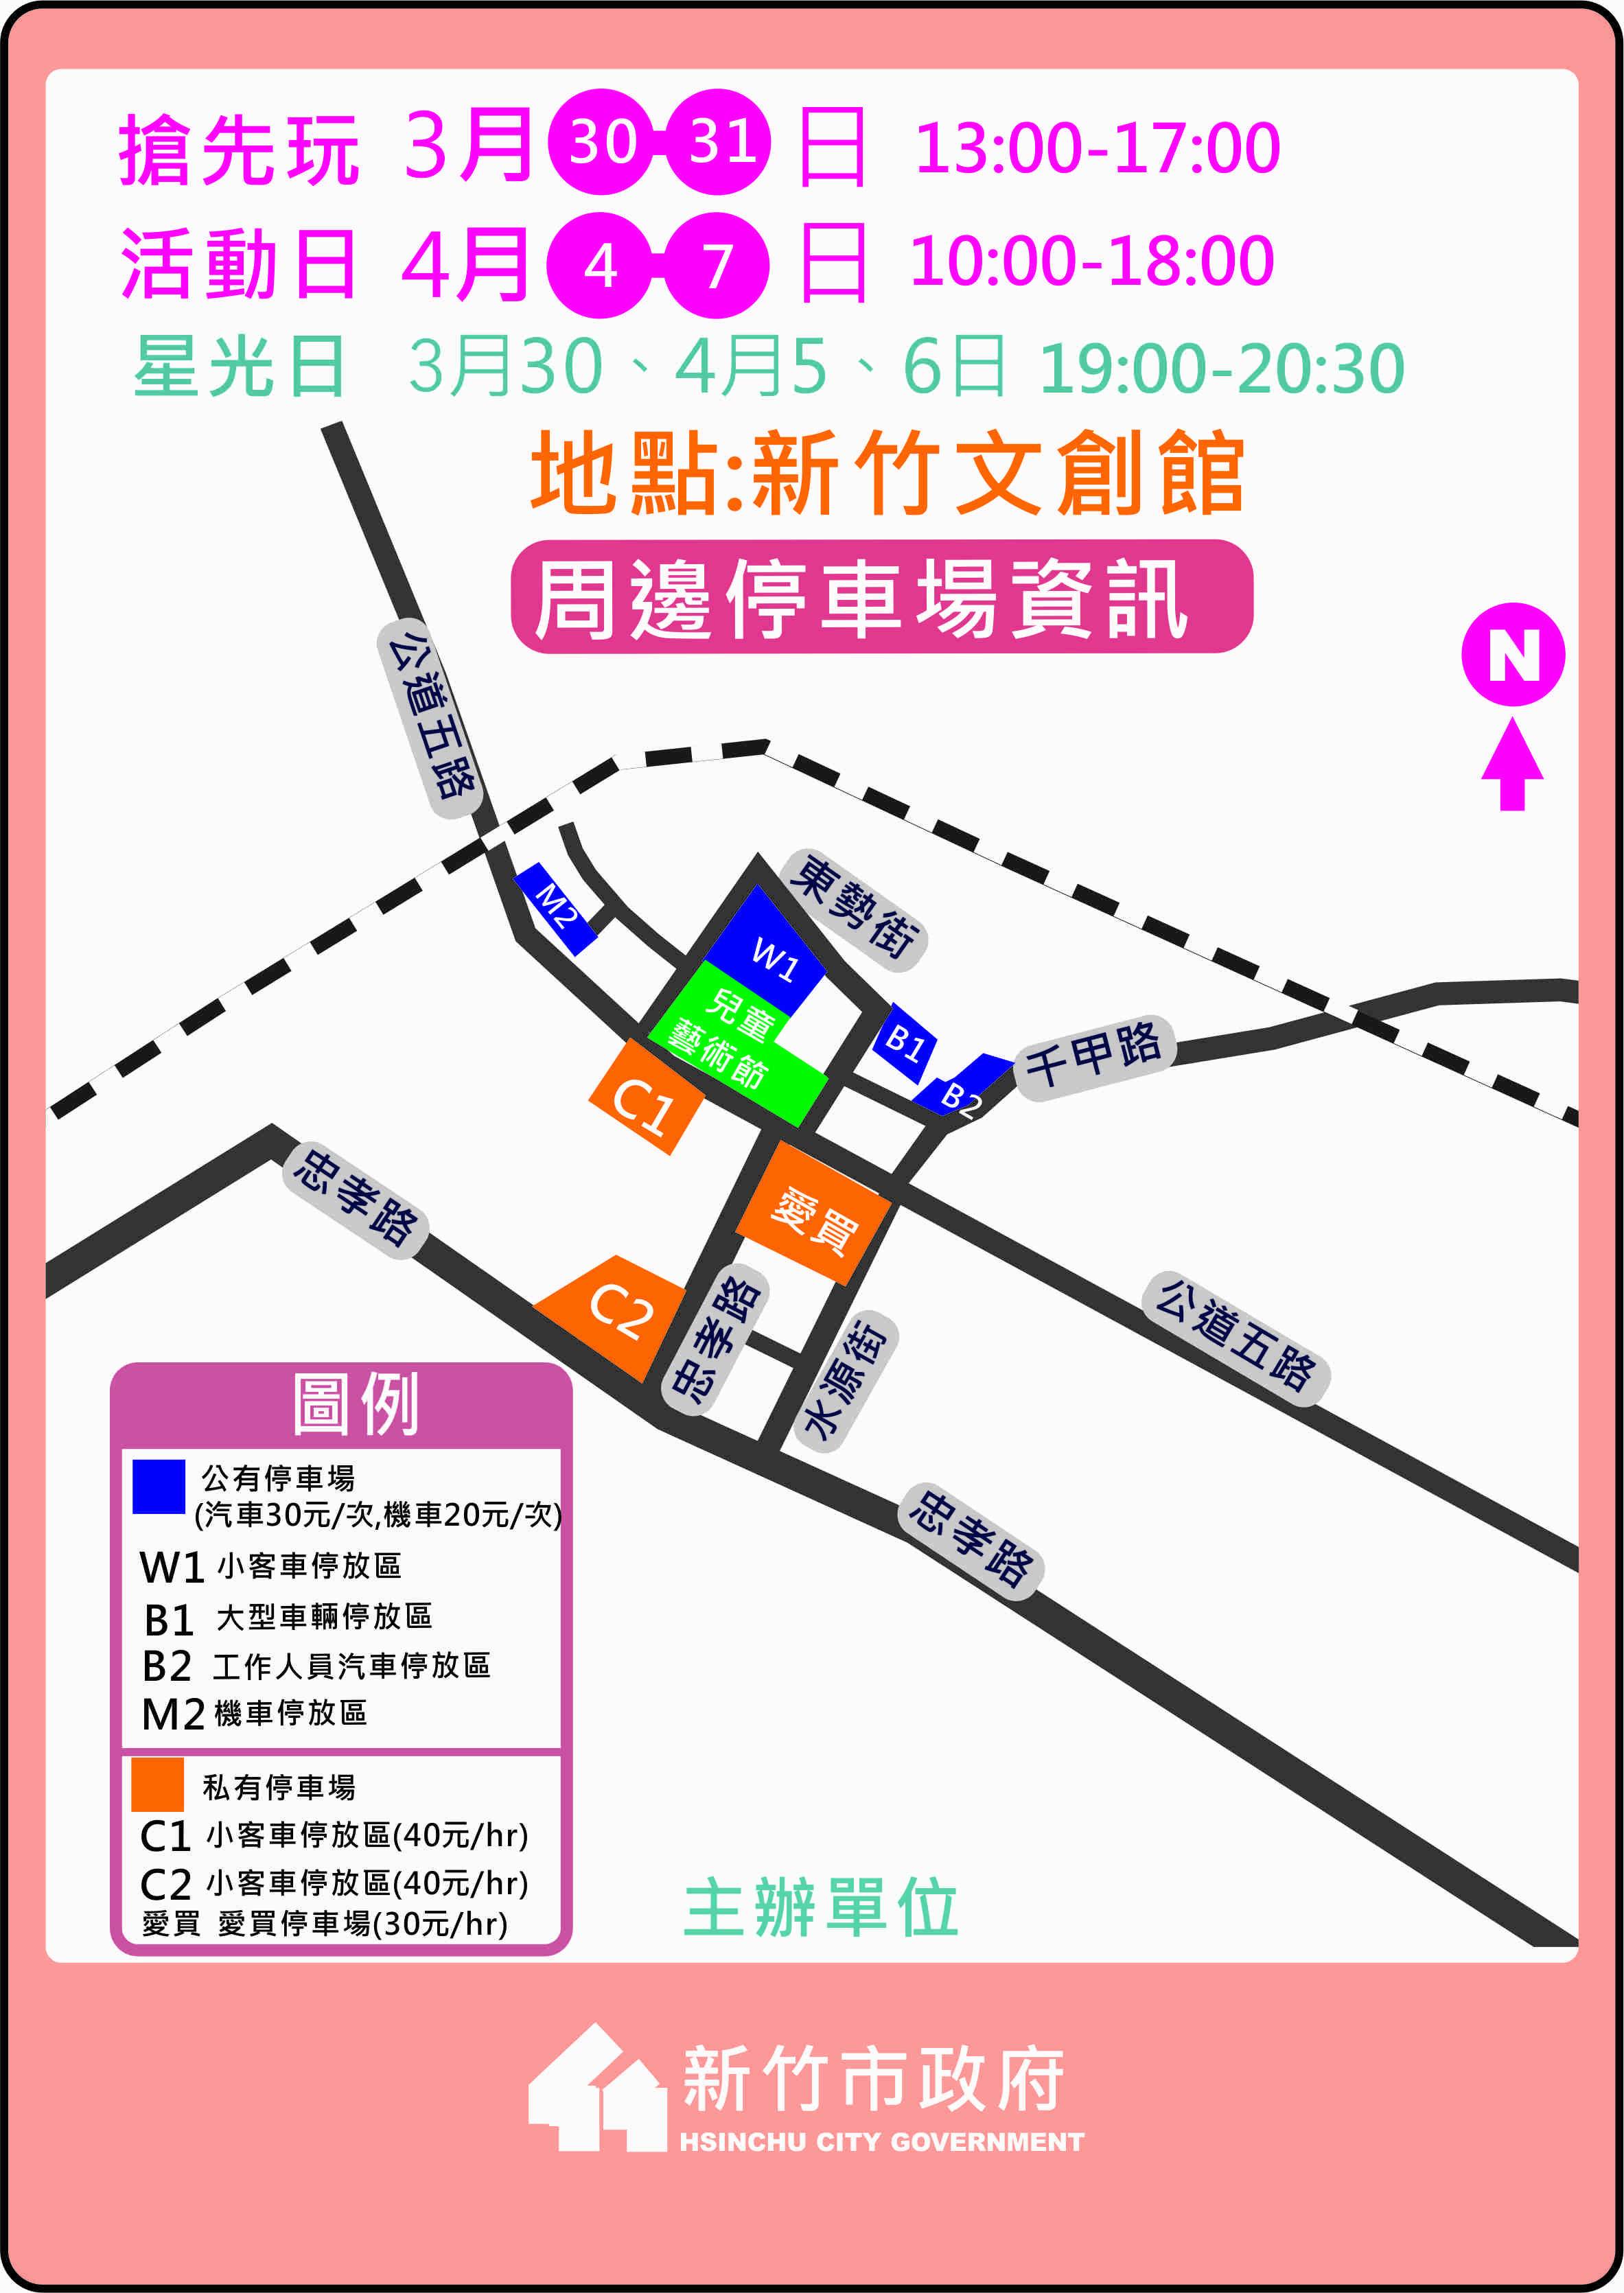 「2019新竹市兒童藝術節-風的運動場」交通疏導措施